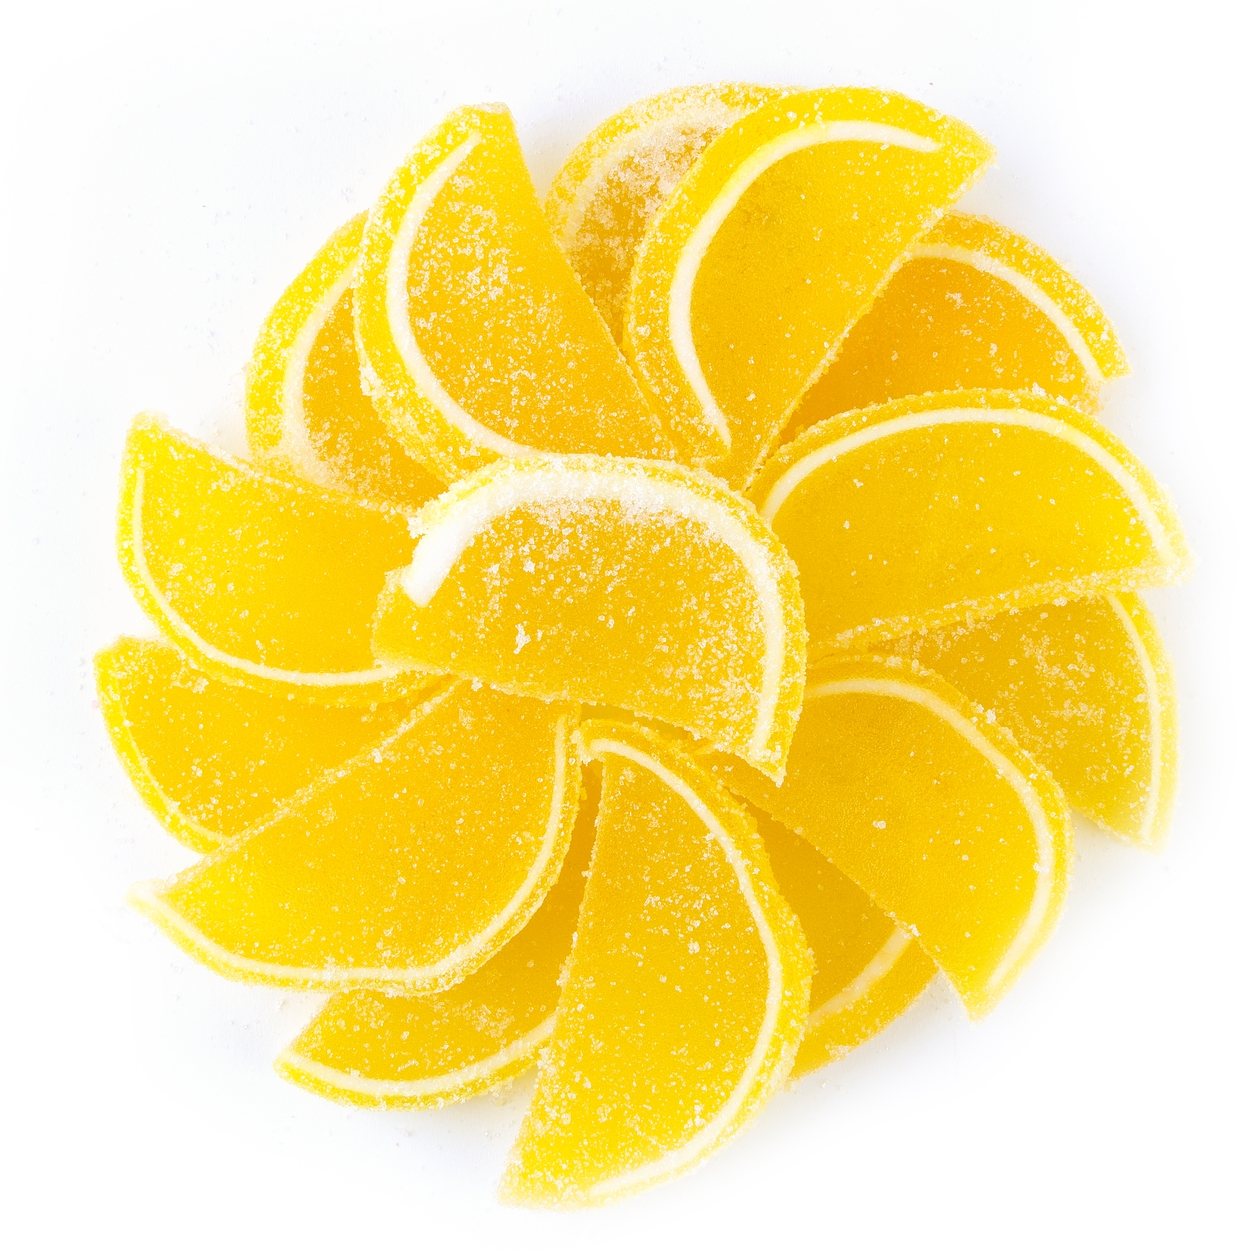 Kosher Lemons (Each)